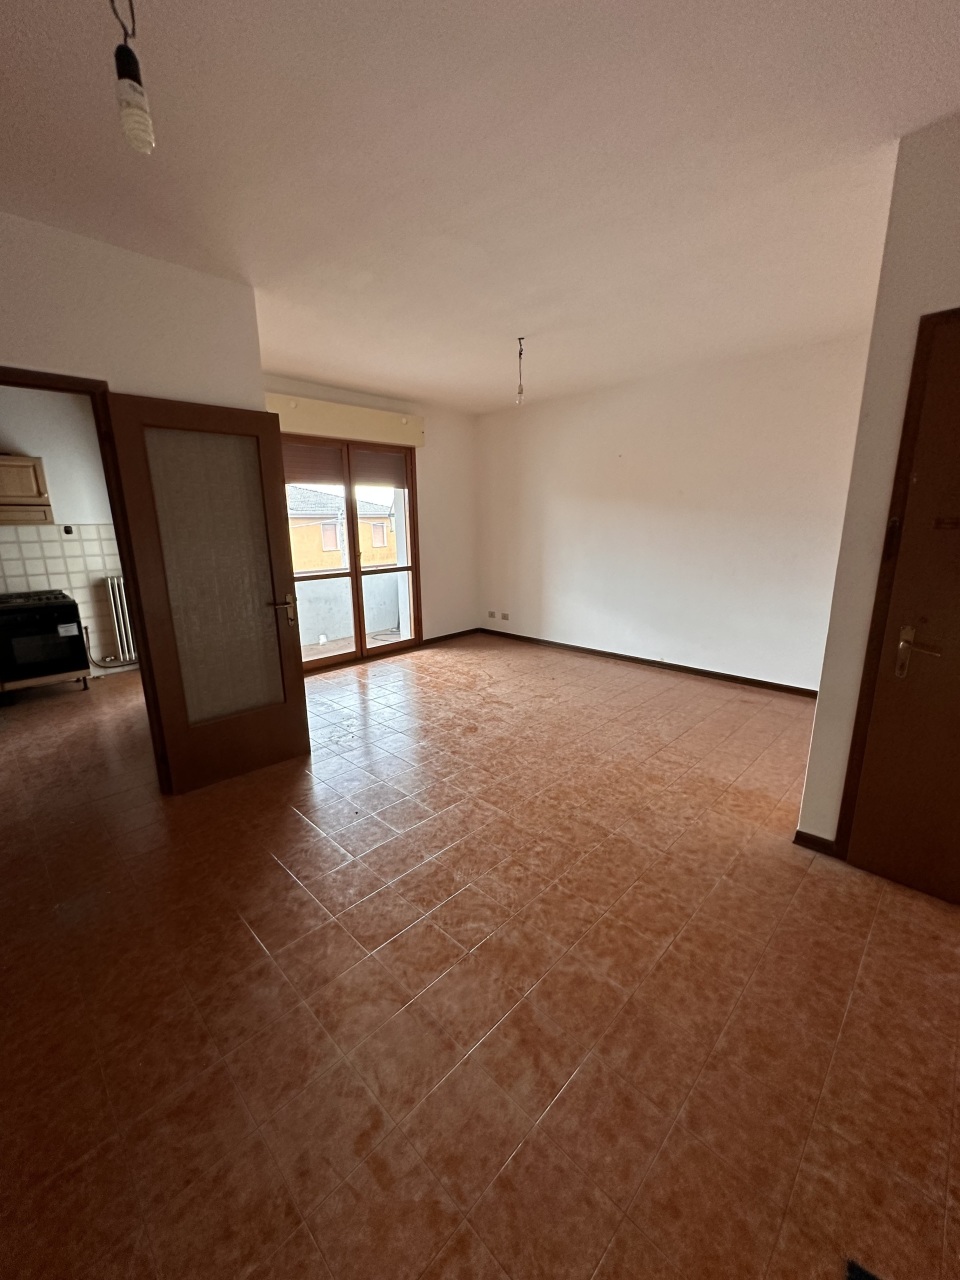 Appartamento in affitto a Polesella, 5 locali, prezzo € 450 | PortaleAgenzieImmobiliari.it